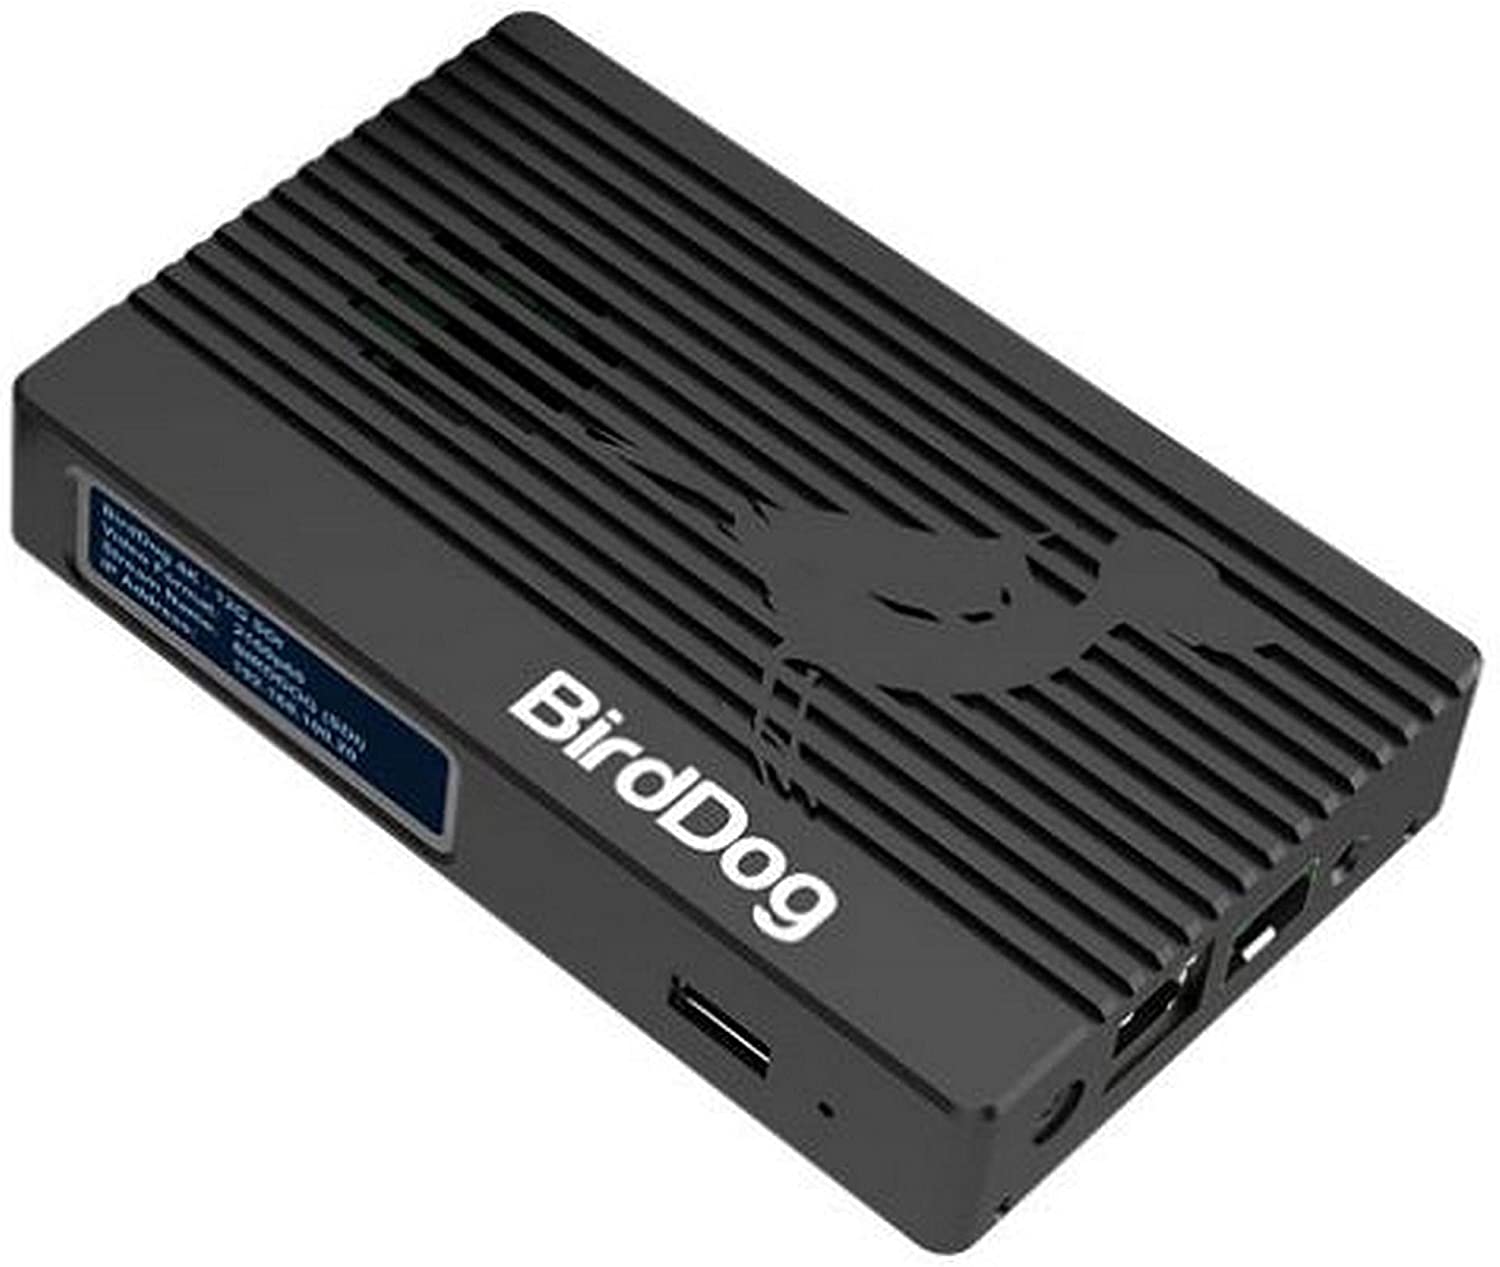 BirdDog 4K SDI 12G-SDI NDI Encoder